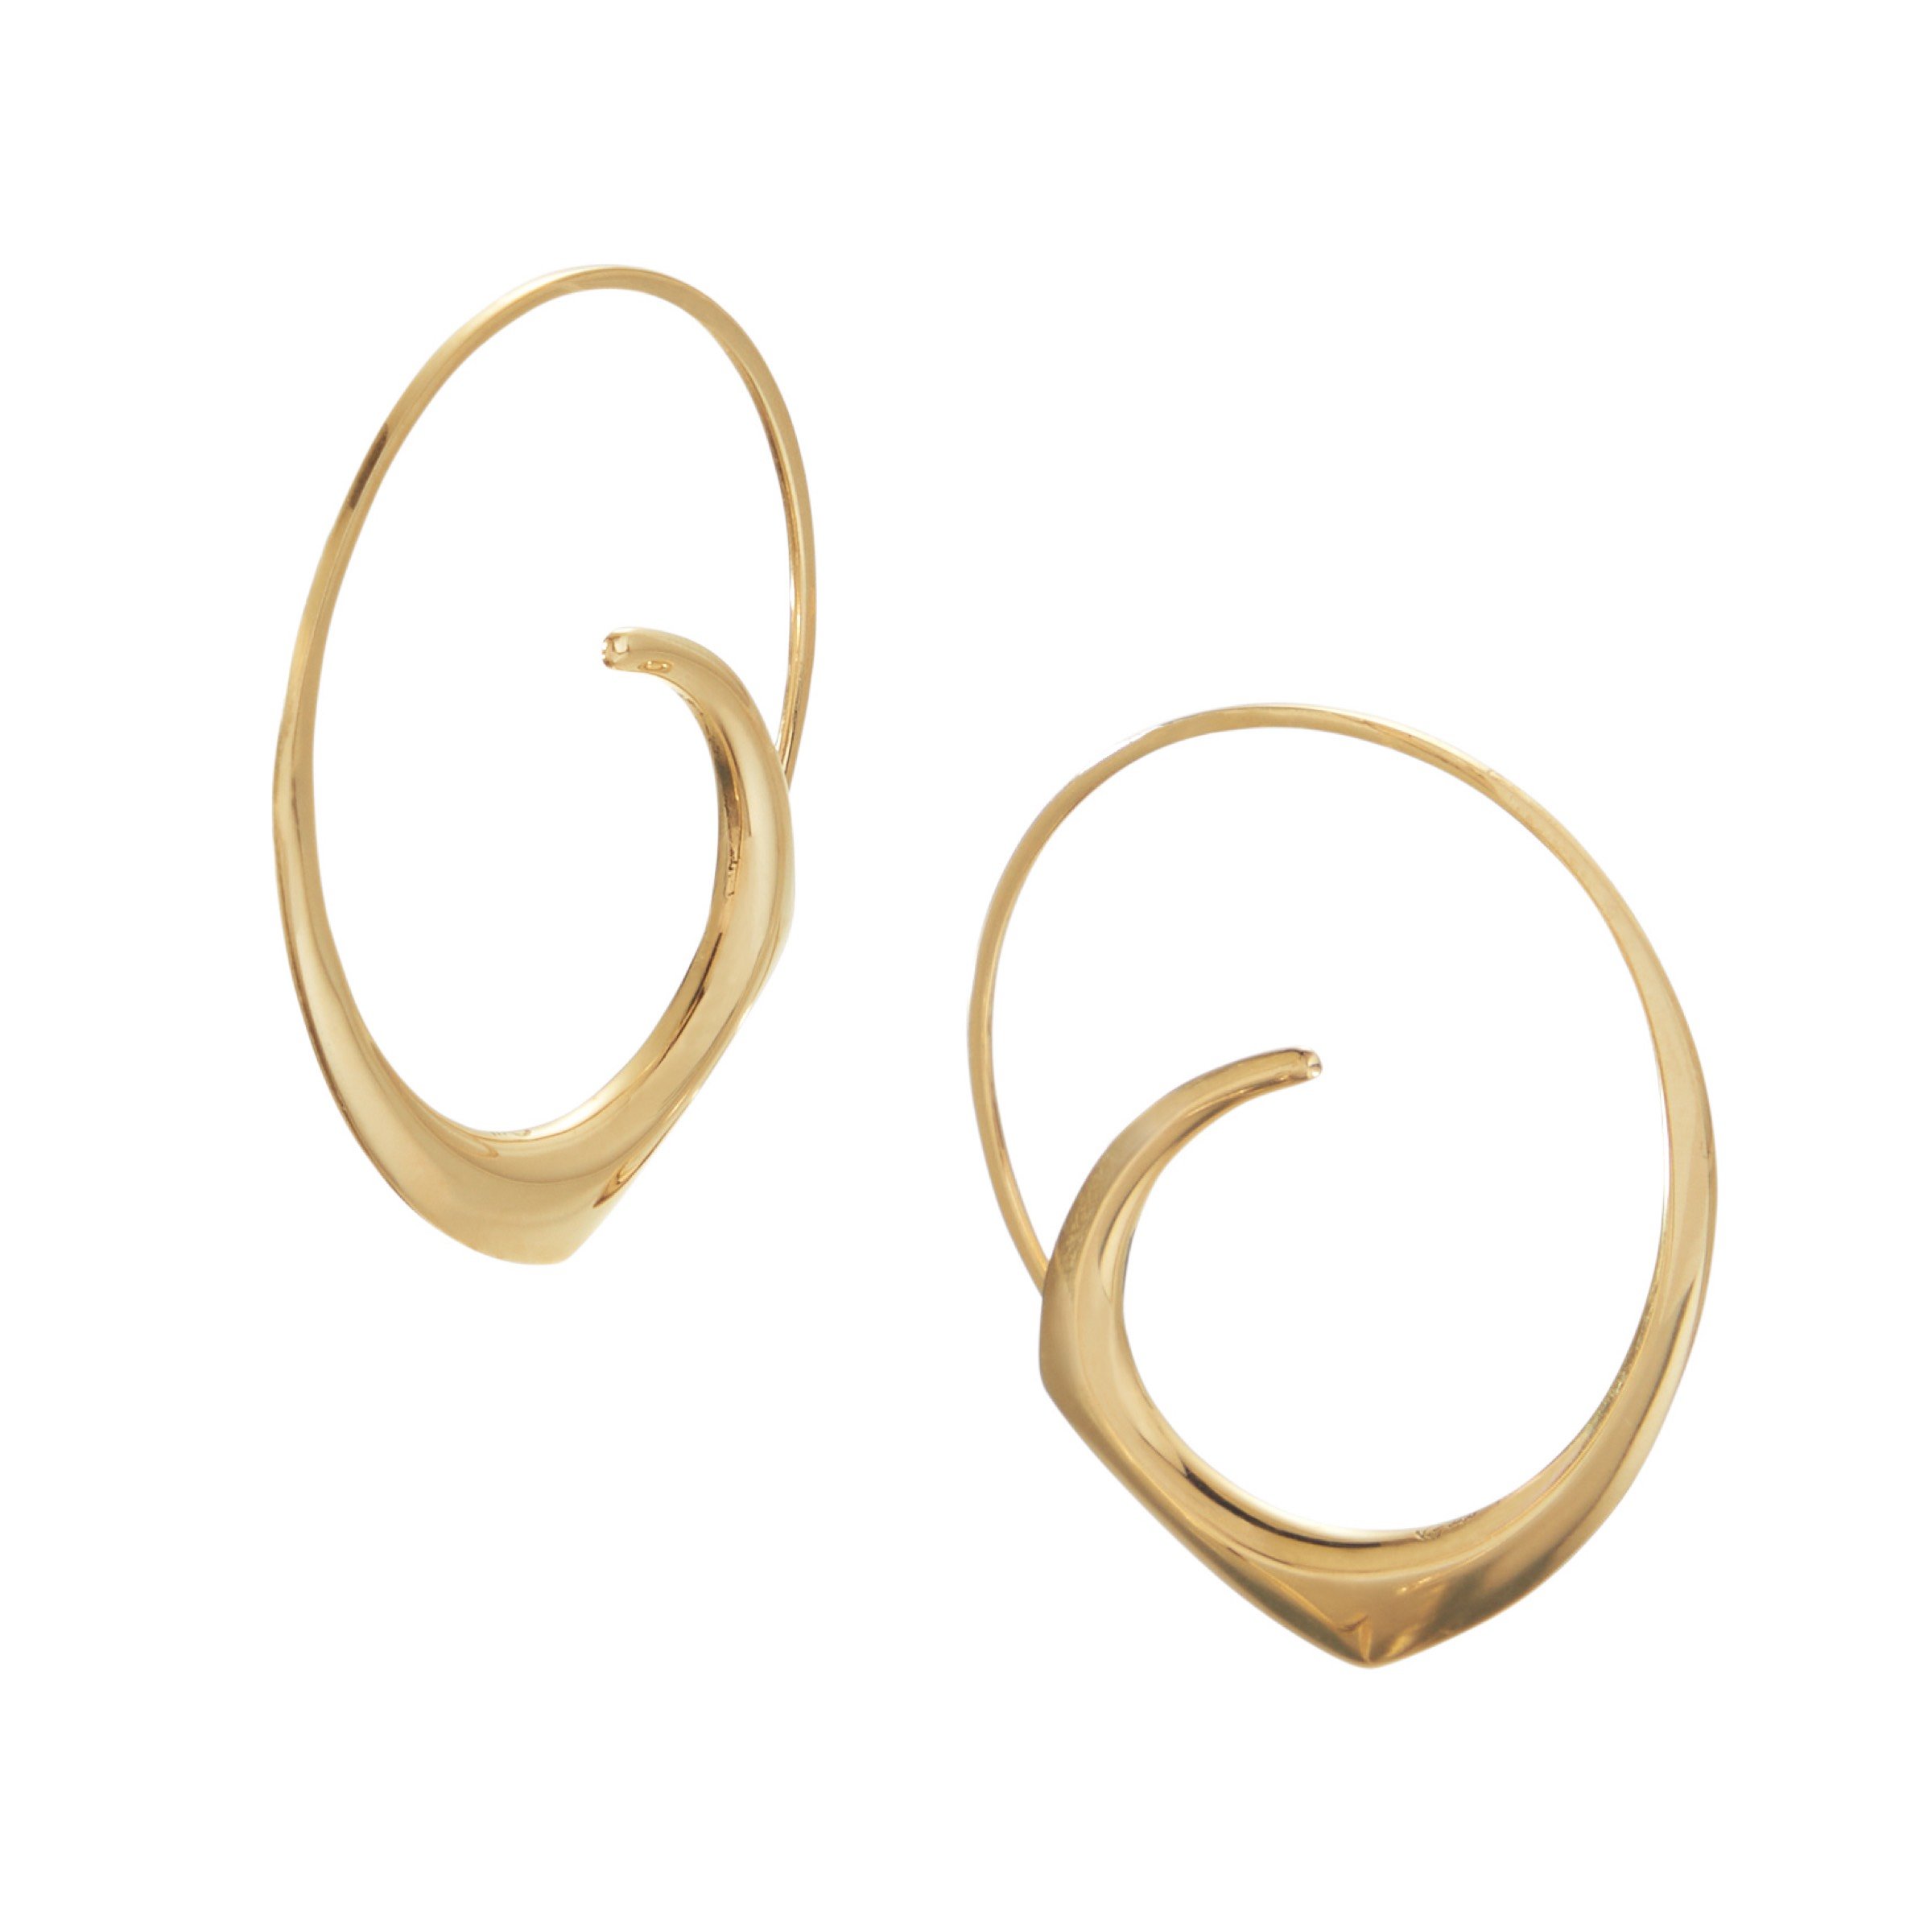 Brooke Earrings by Britt Anderson (Gold Earrings) | Artful Home